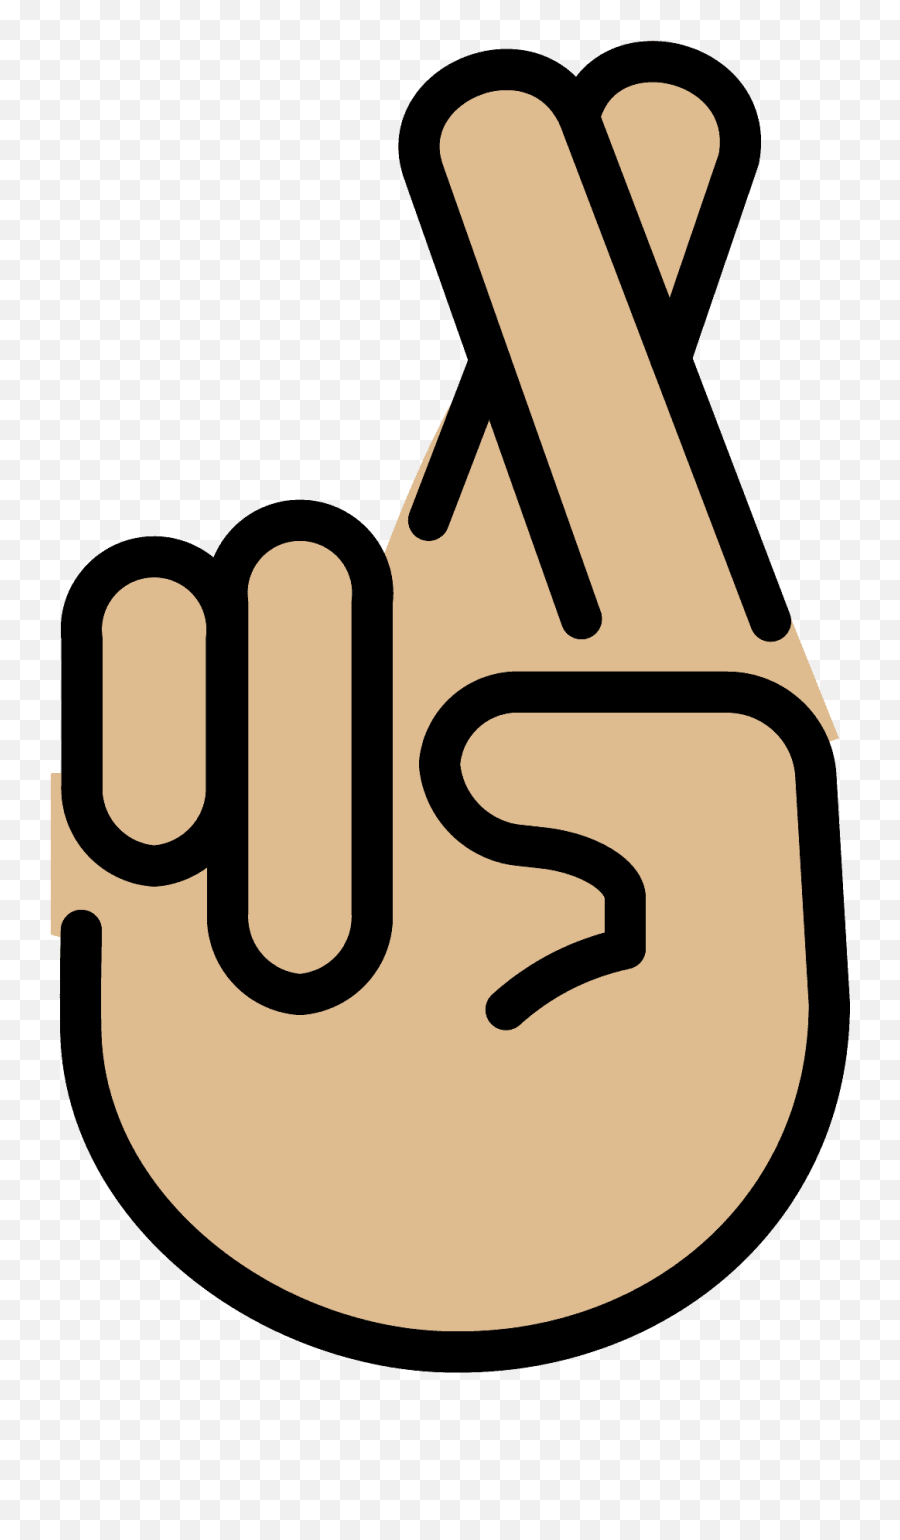 Crossed Fingers Emoji Clipart - Dibujo De Este Emoji,Is There A Fingers Crossed Emoji